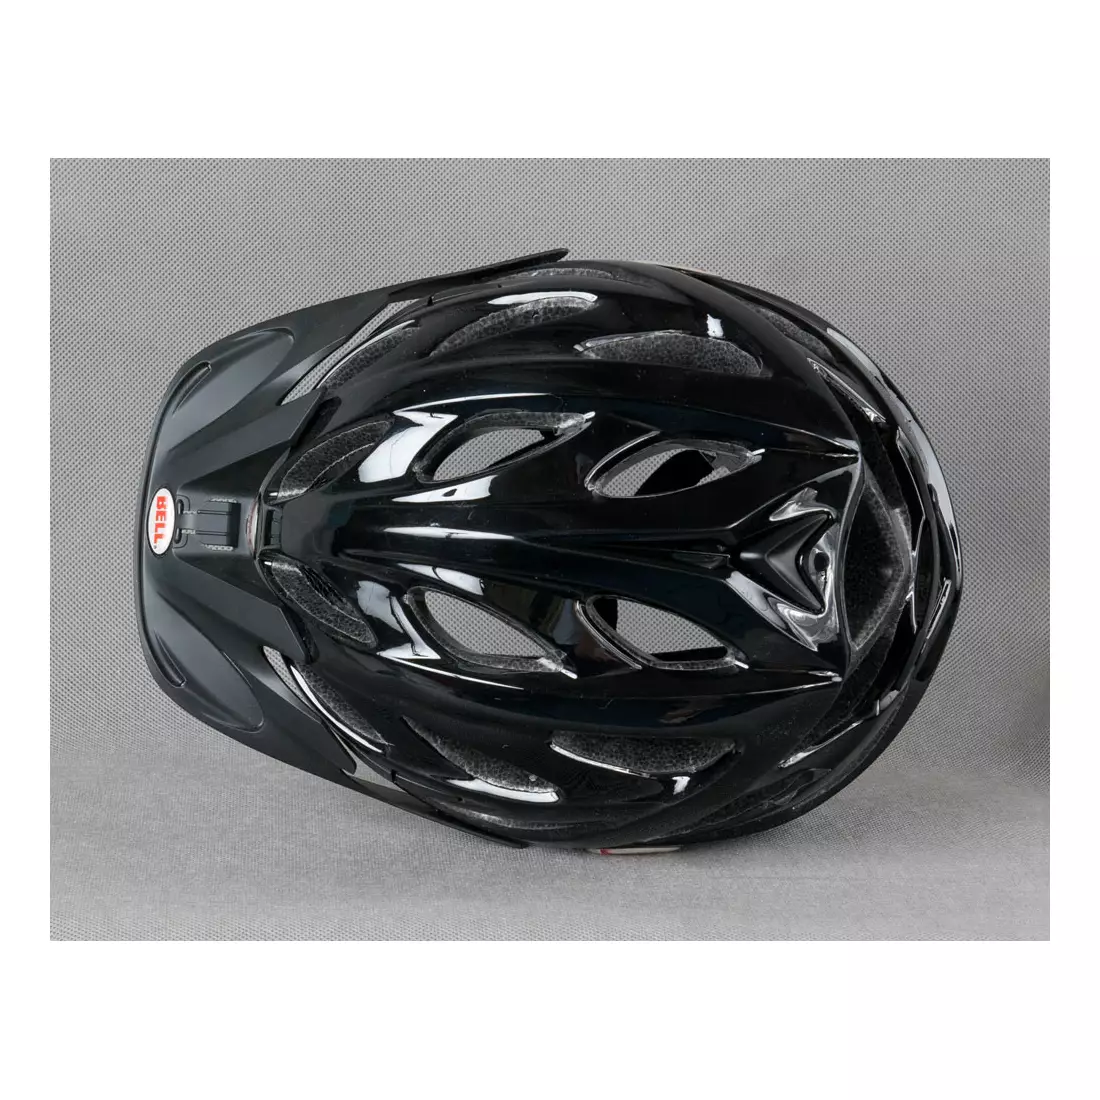 Casca de bicicleta BELL - ARELLA, culoare: Negru